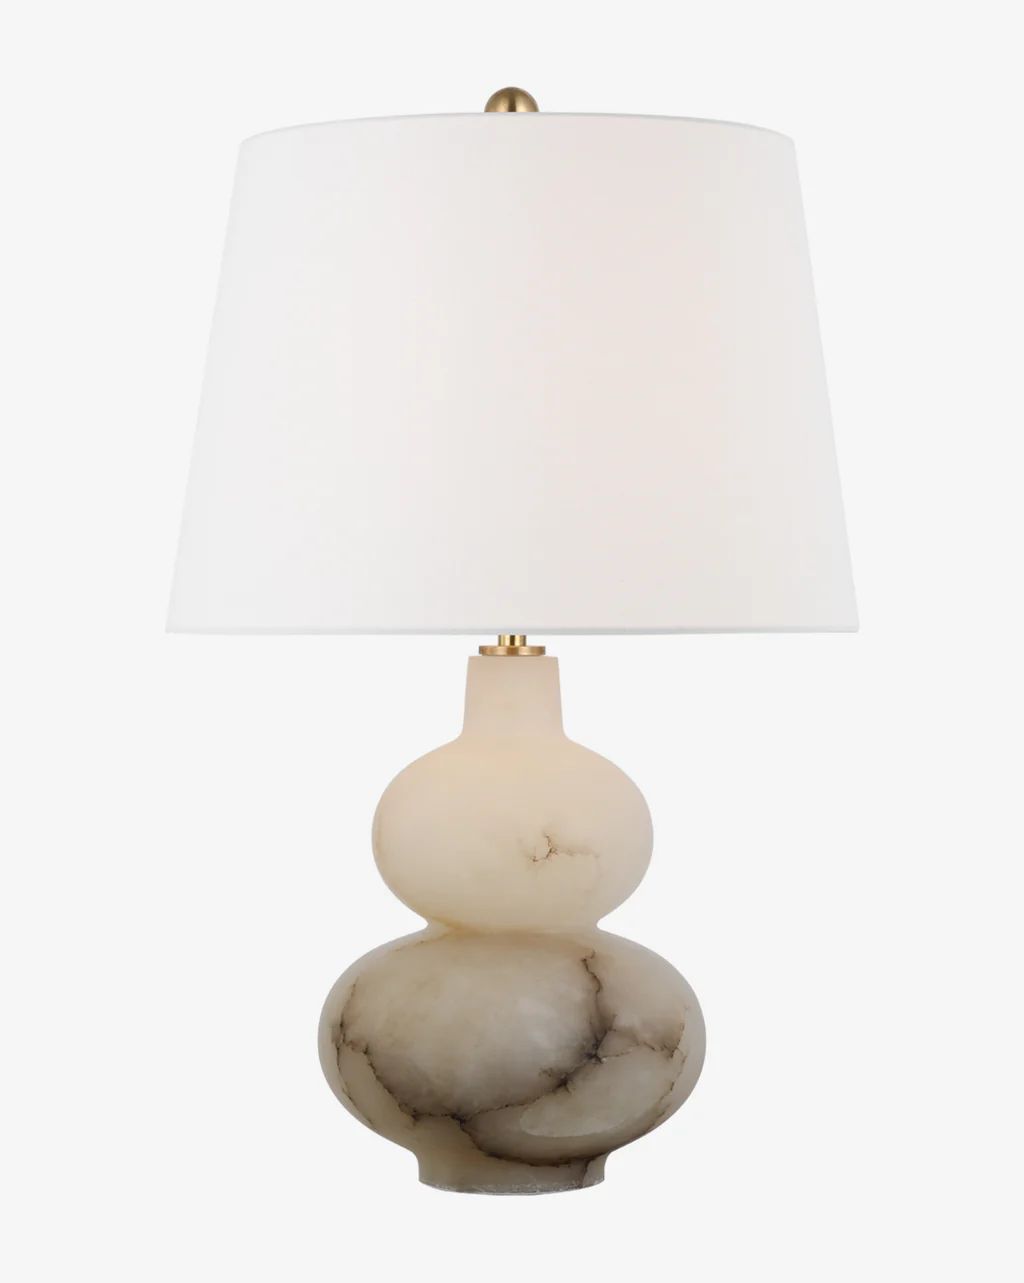 Ciccio Table Lamp | McGee & Co.